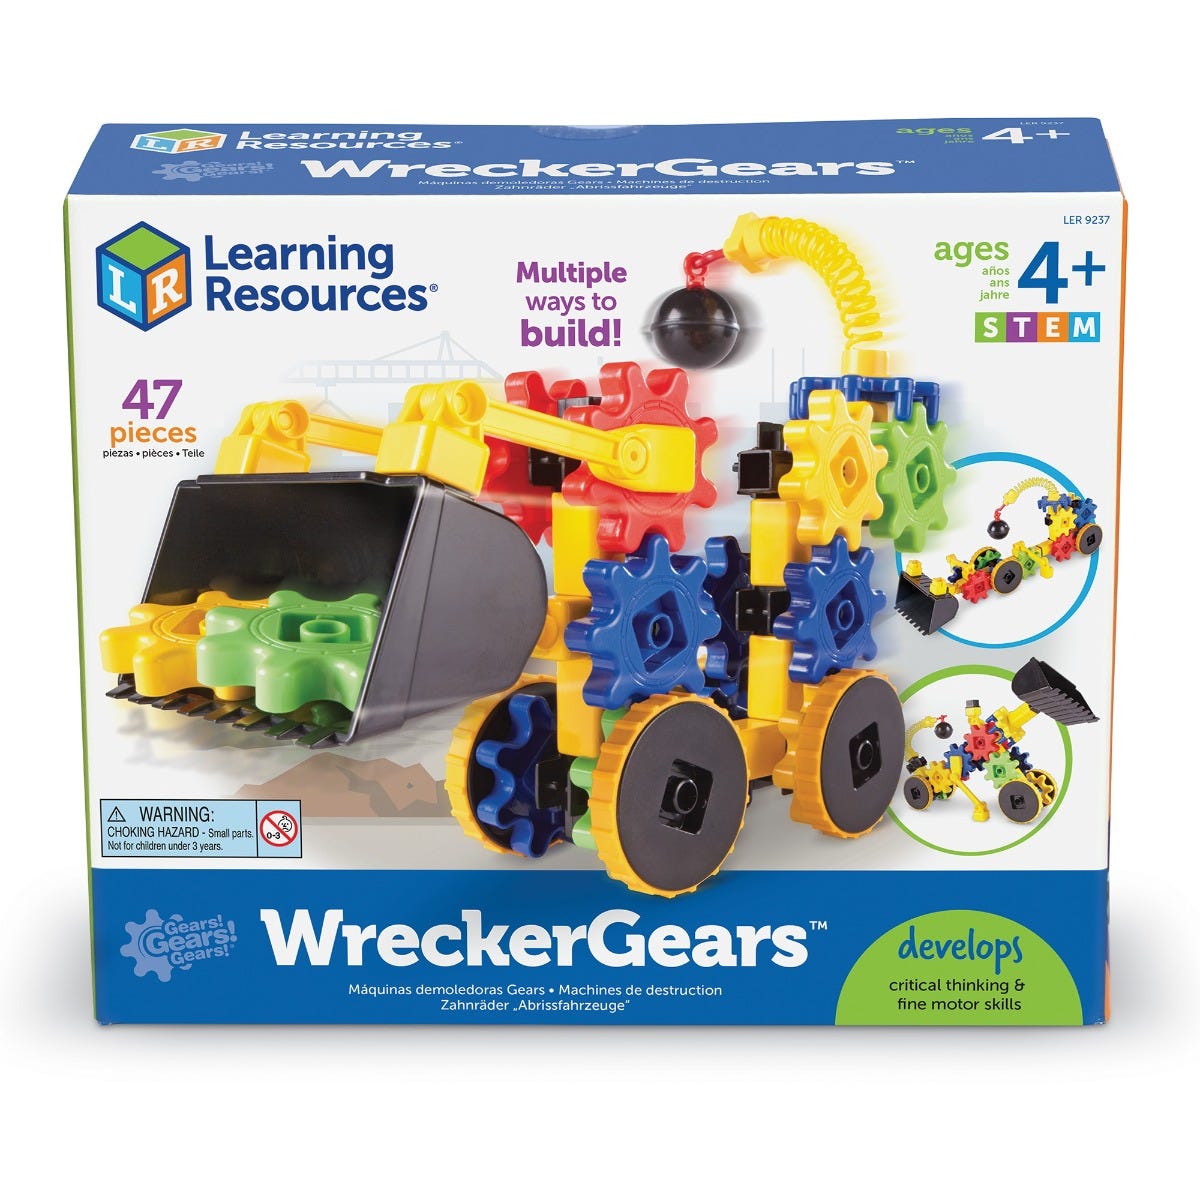 Wrecker Gears - Gears, Gears, Gears!